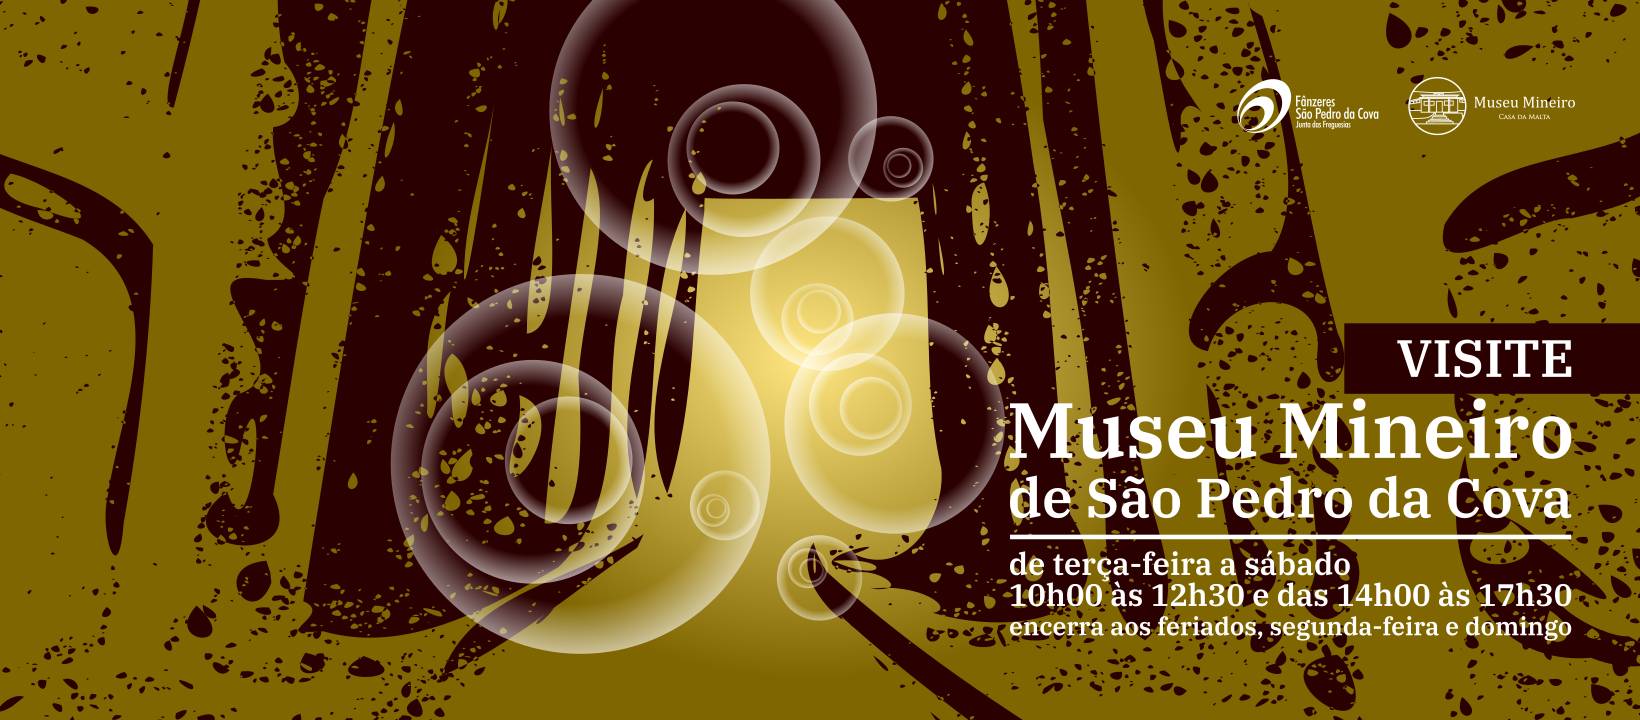 Visite o Museu Mineiro